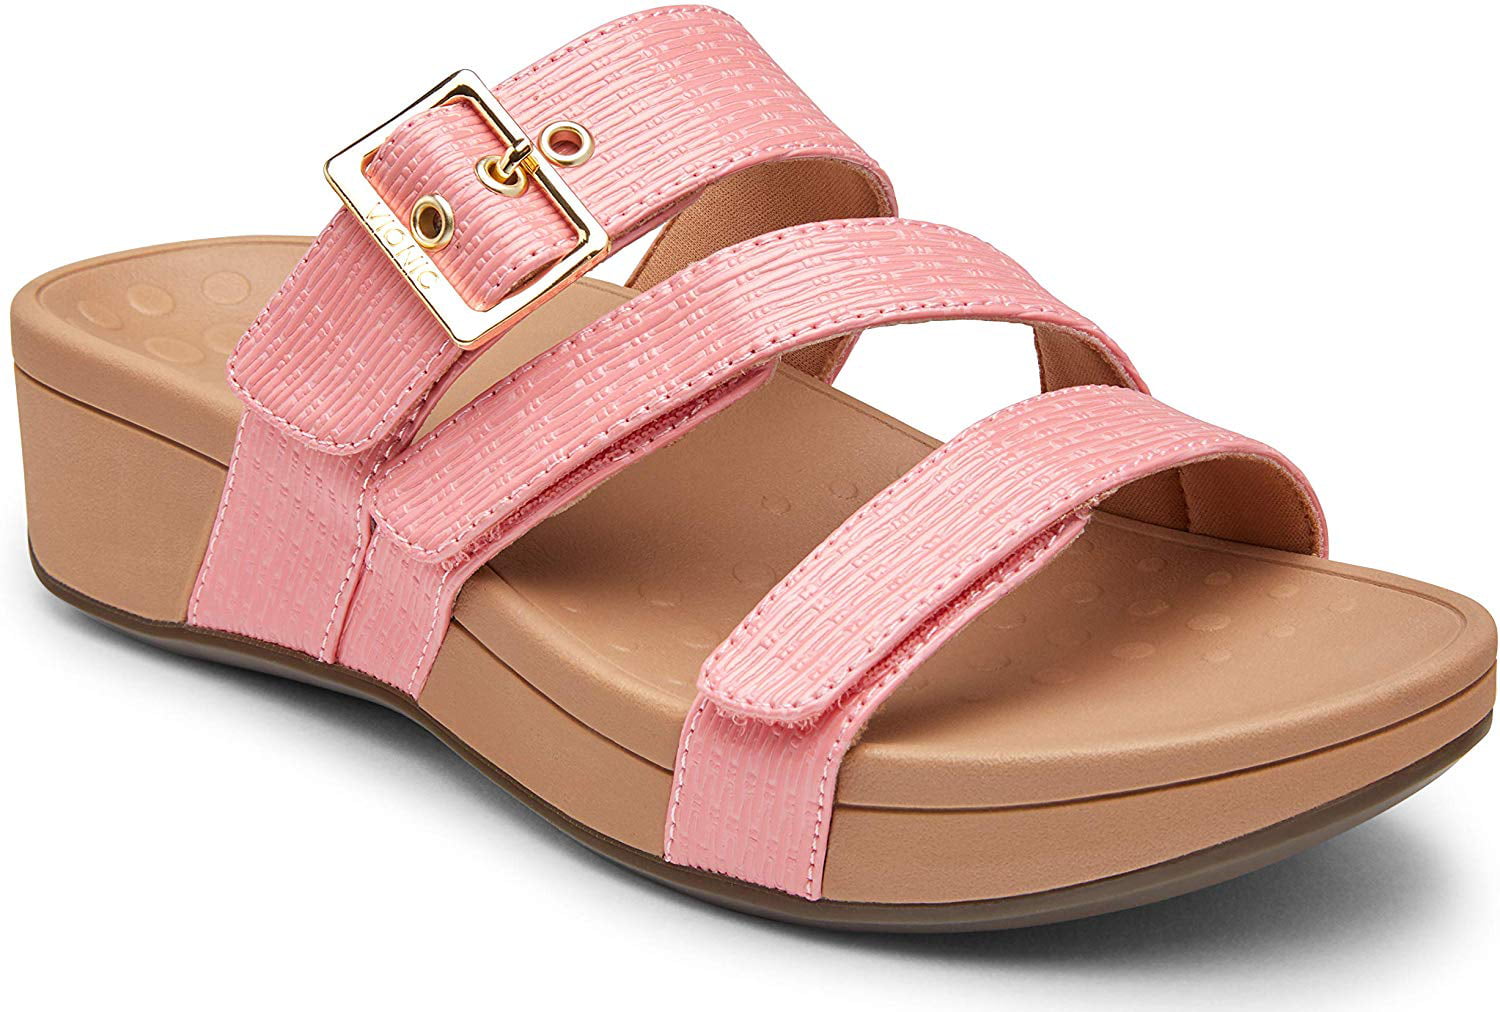 Ladies Adjustable Slide Sandal with 